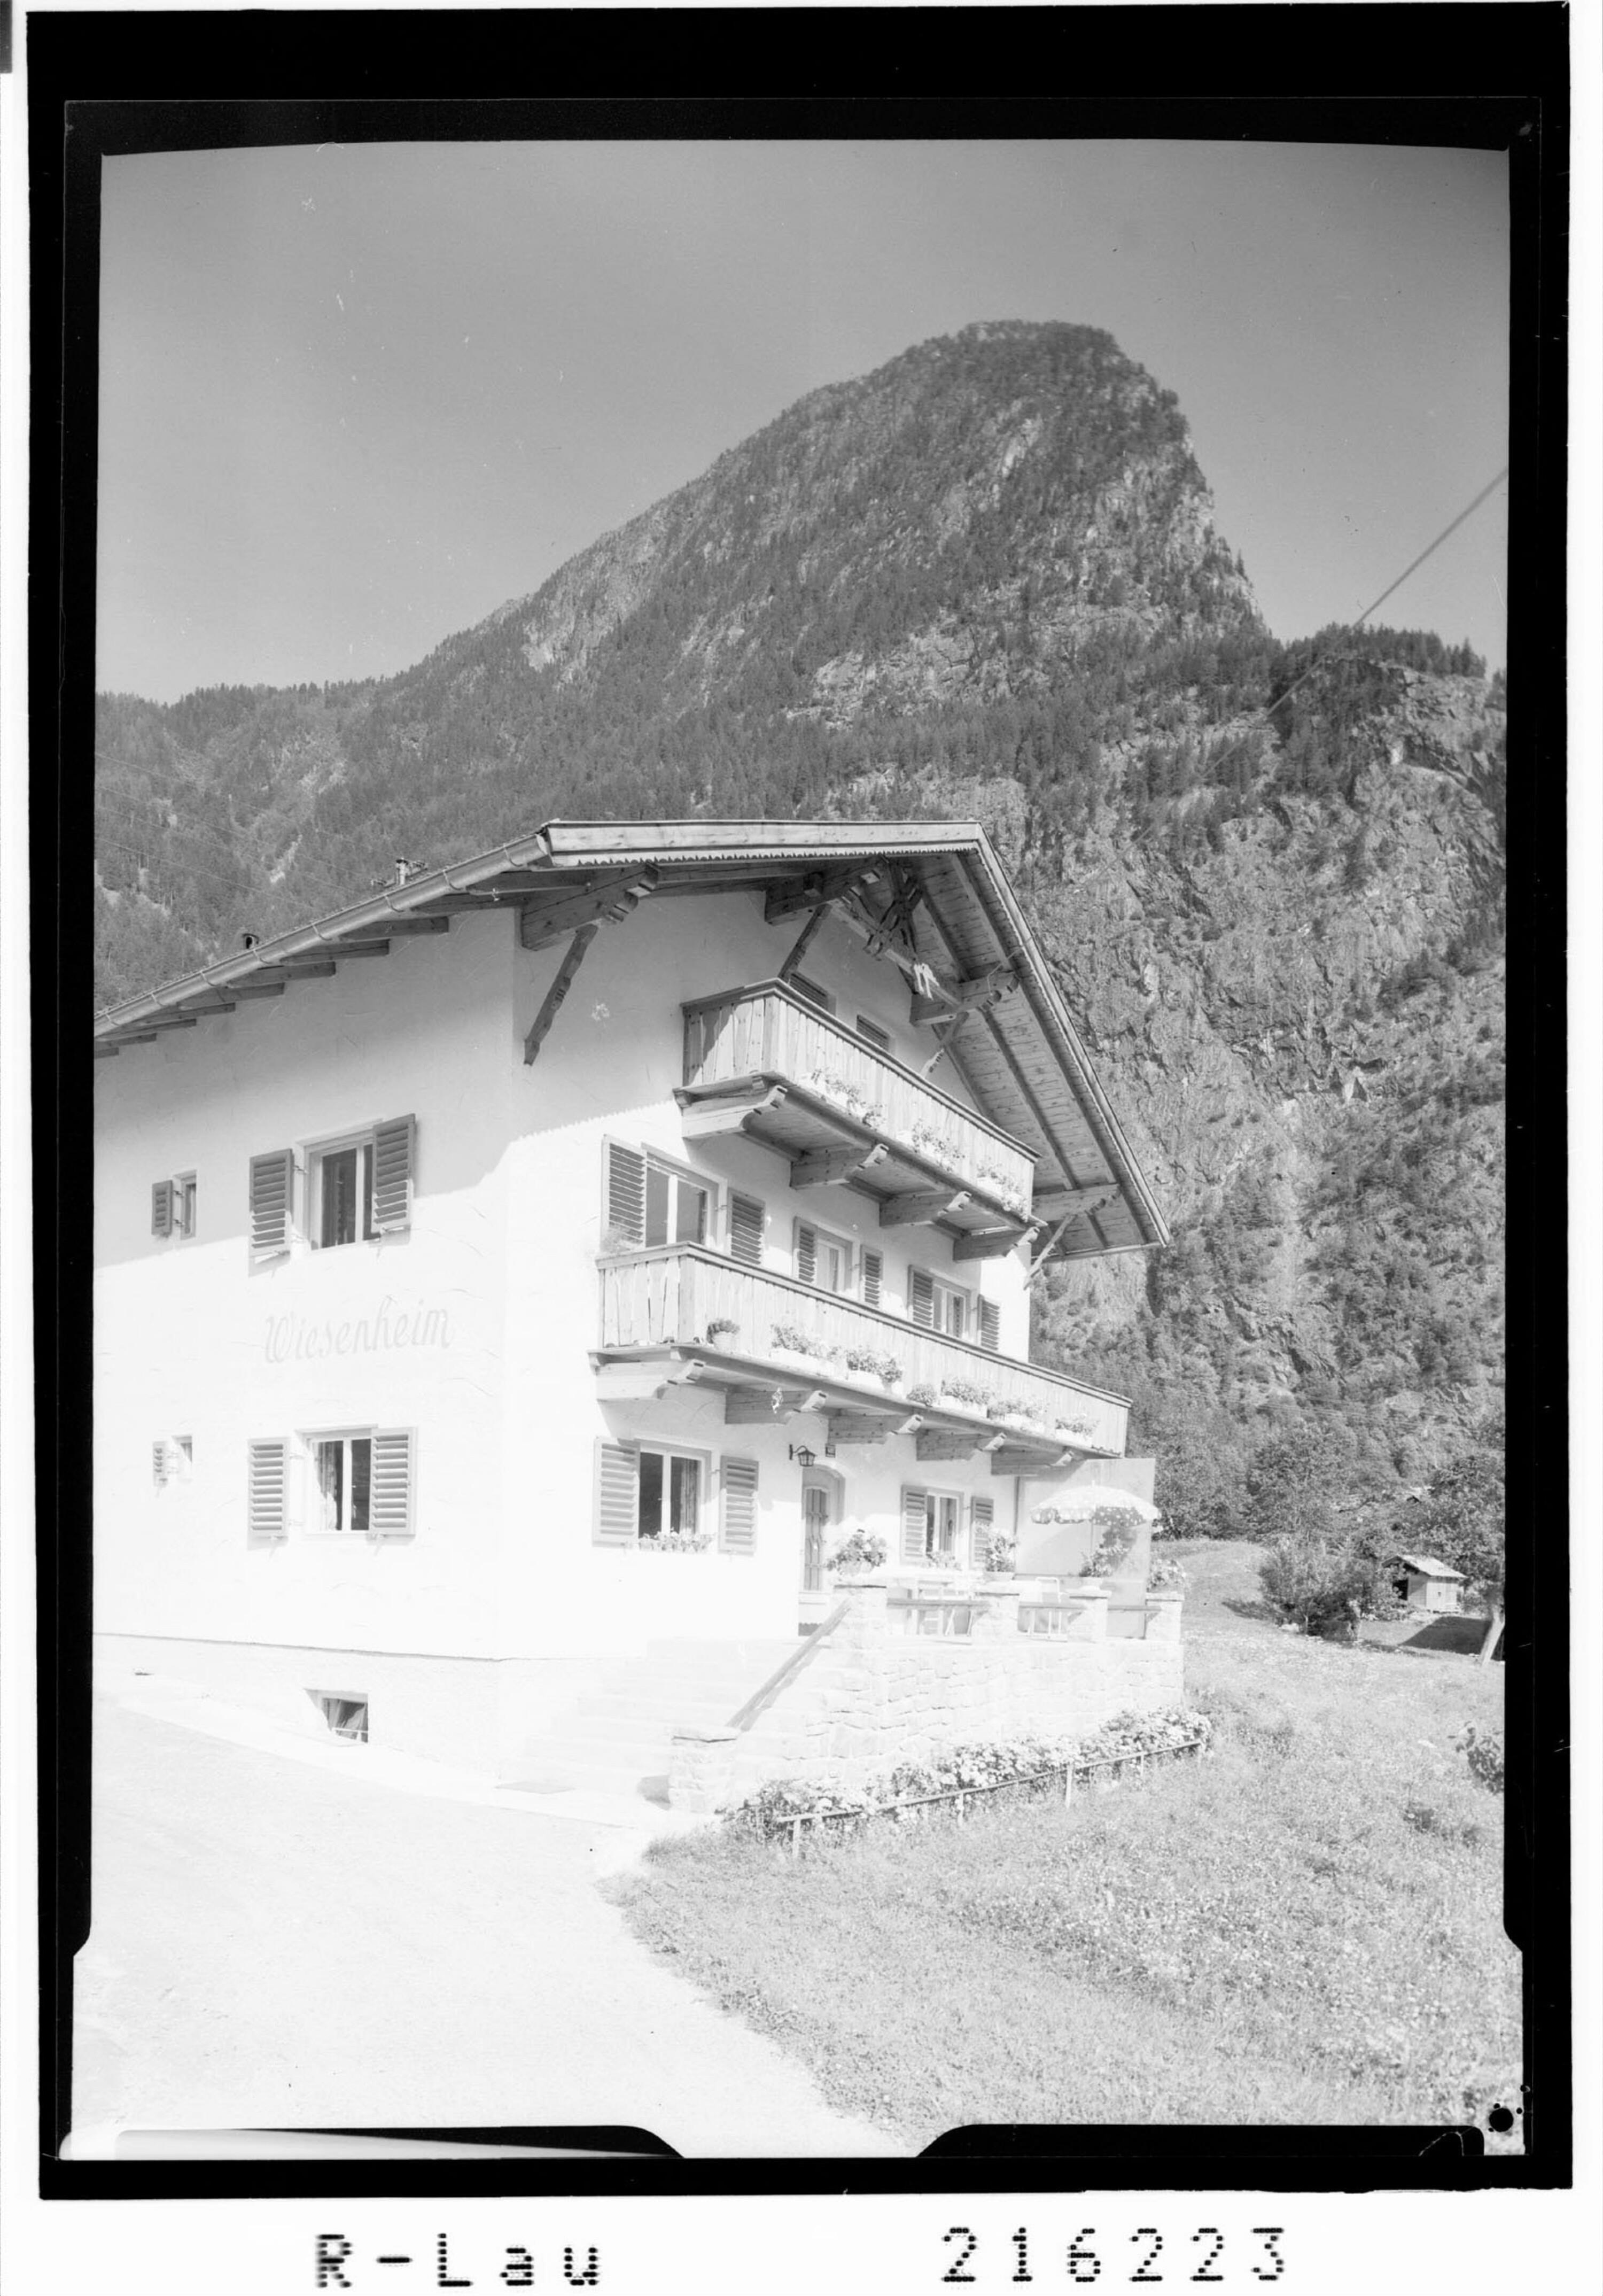 [Haus Wiesenheim in Habichen bei Ötz im Ötztal gegen Habicher Wand / Tirol]></div>


    <hr>
    <div class=